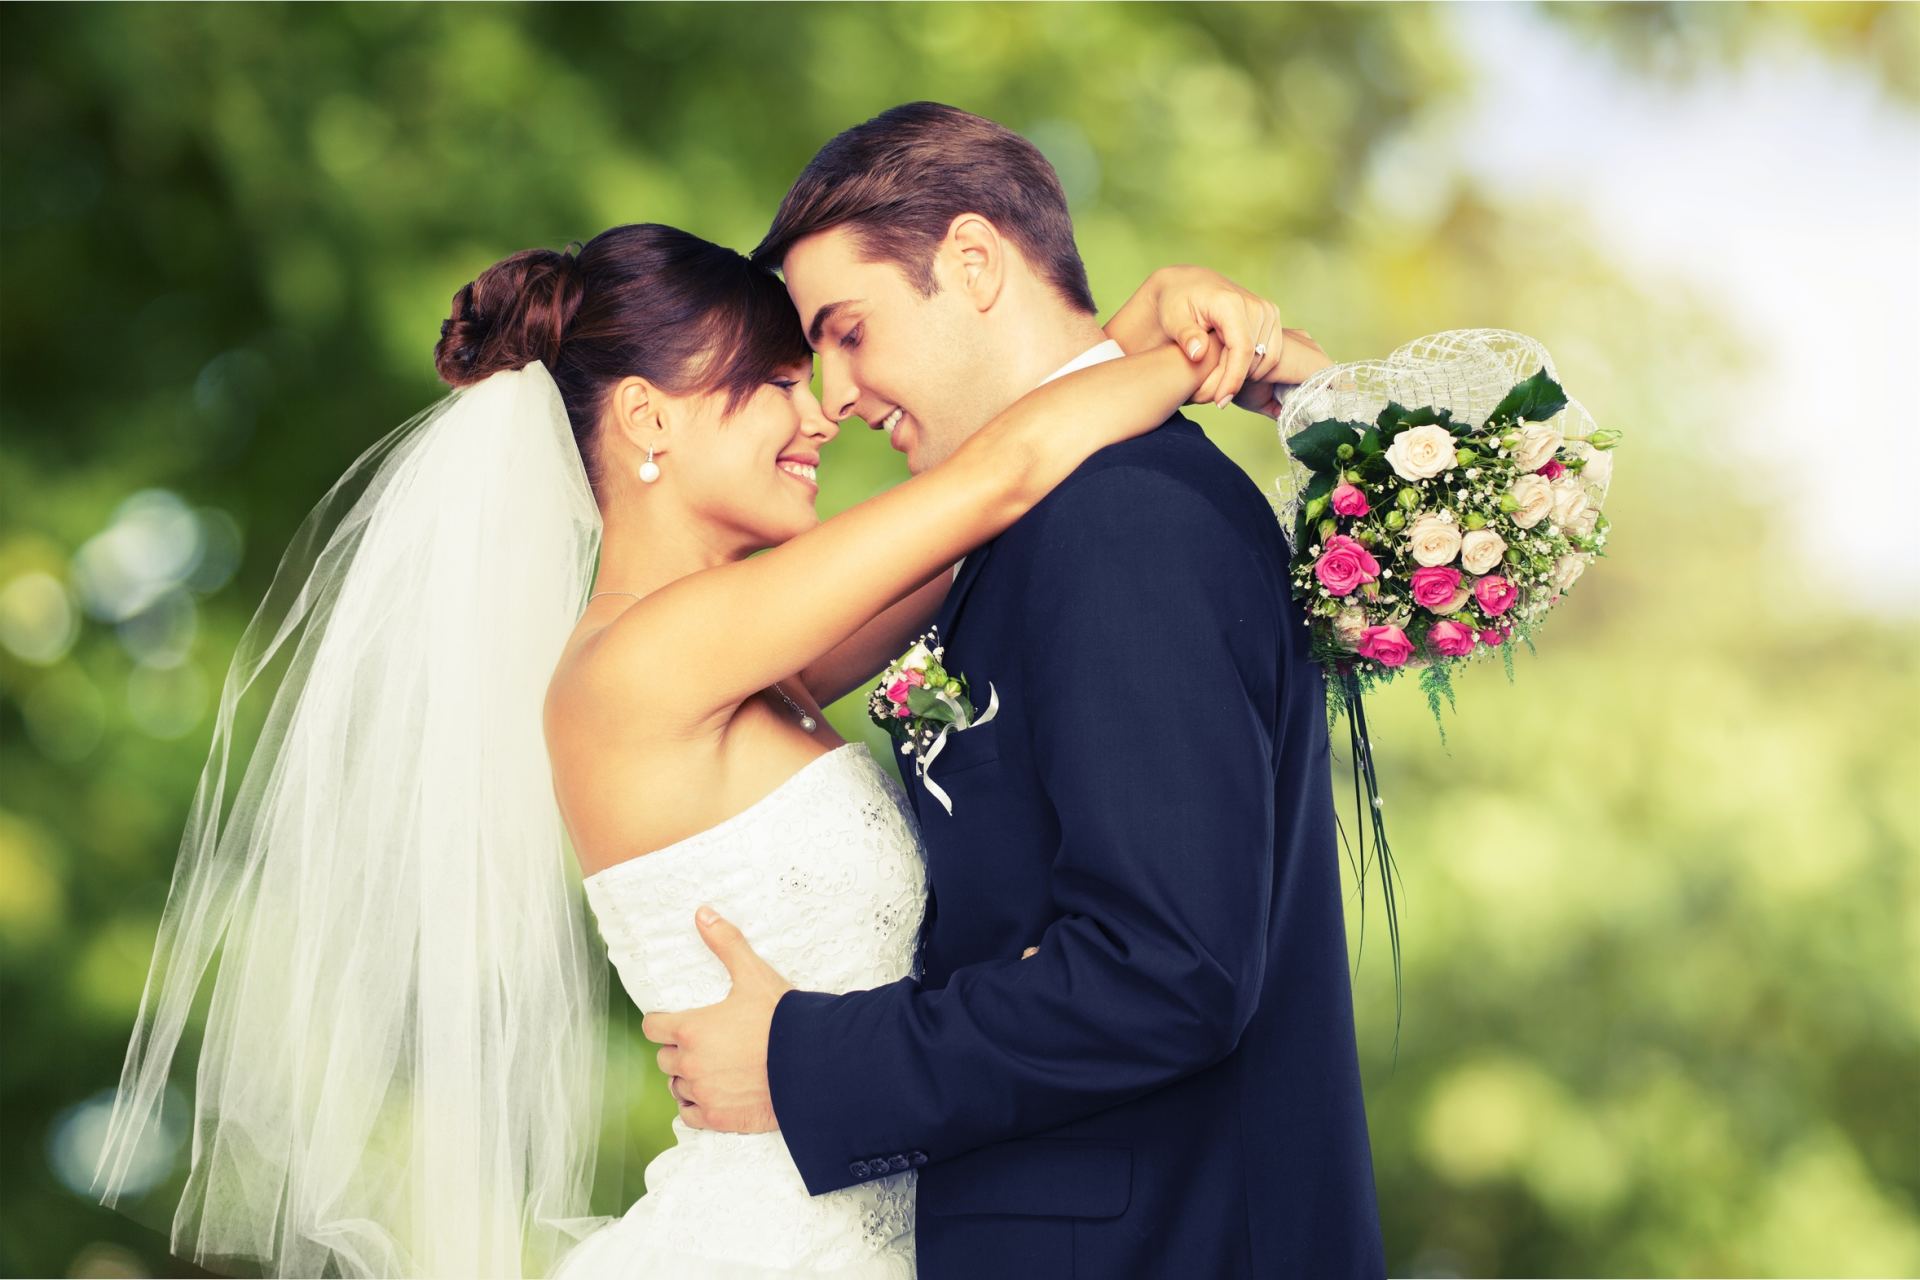 Patarimai ir idėjos - Vestuvės UŽSIENYJE: kaip išsirinkti fotografą? | Vestuvėtote.lt